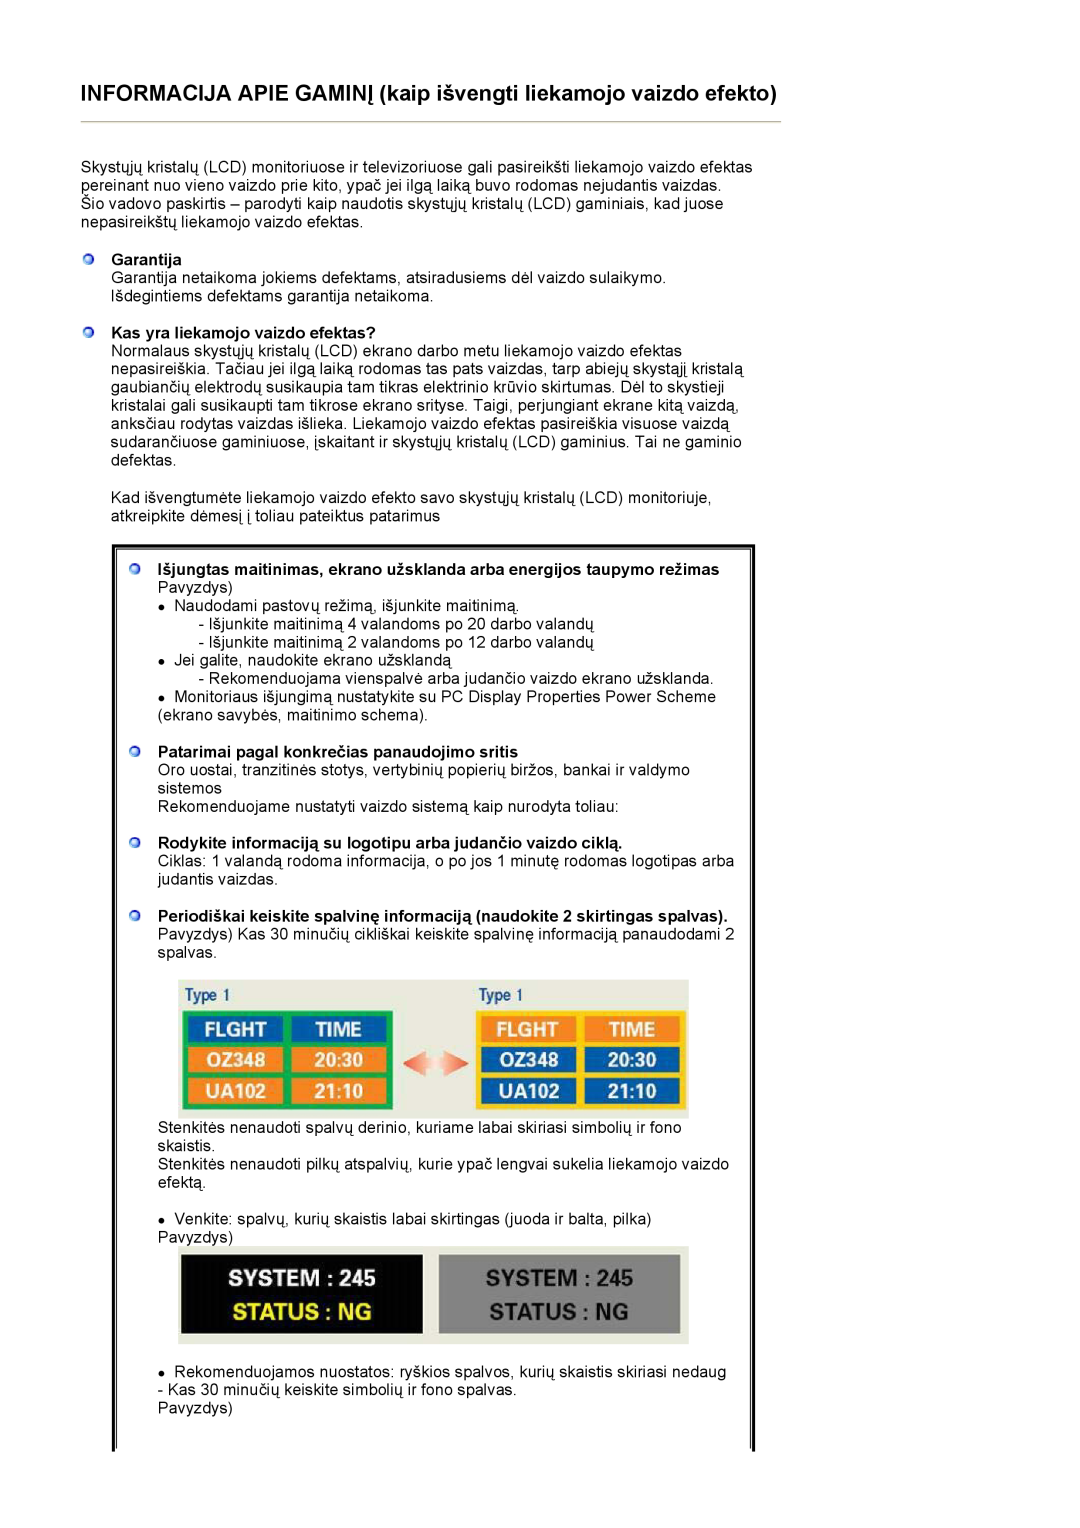 Samsung LS27HUBCB/EDC manual Garantija, Kas yra liekamojo vaizdo efektas?, Patarimai pagal konkrečias panaudojimo sritis 